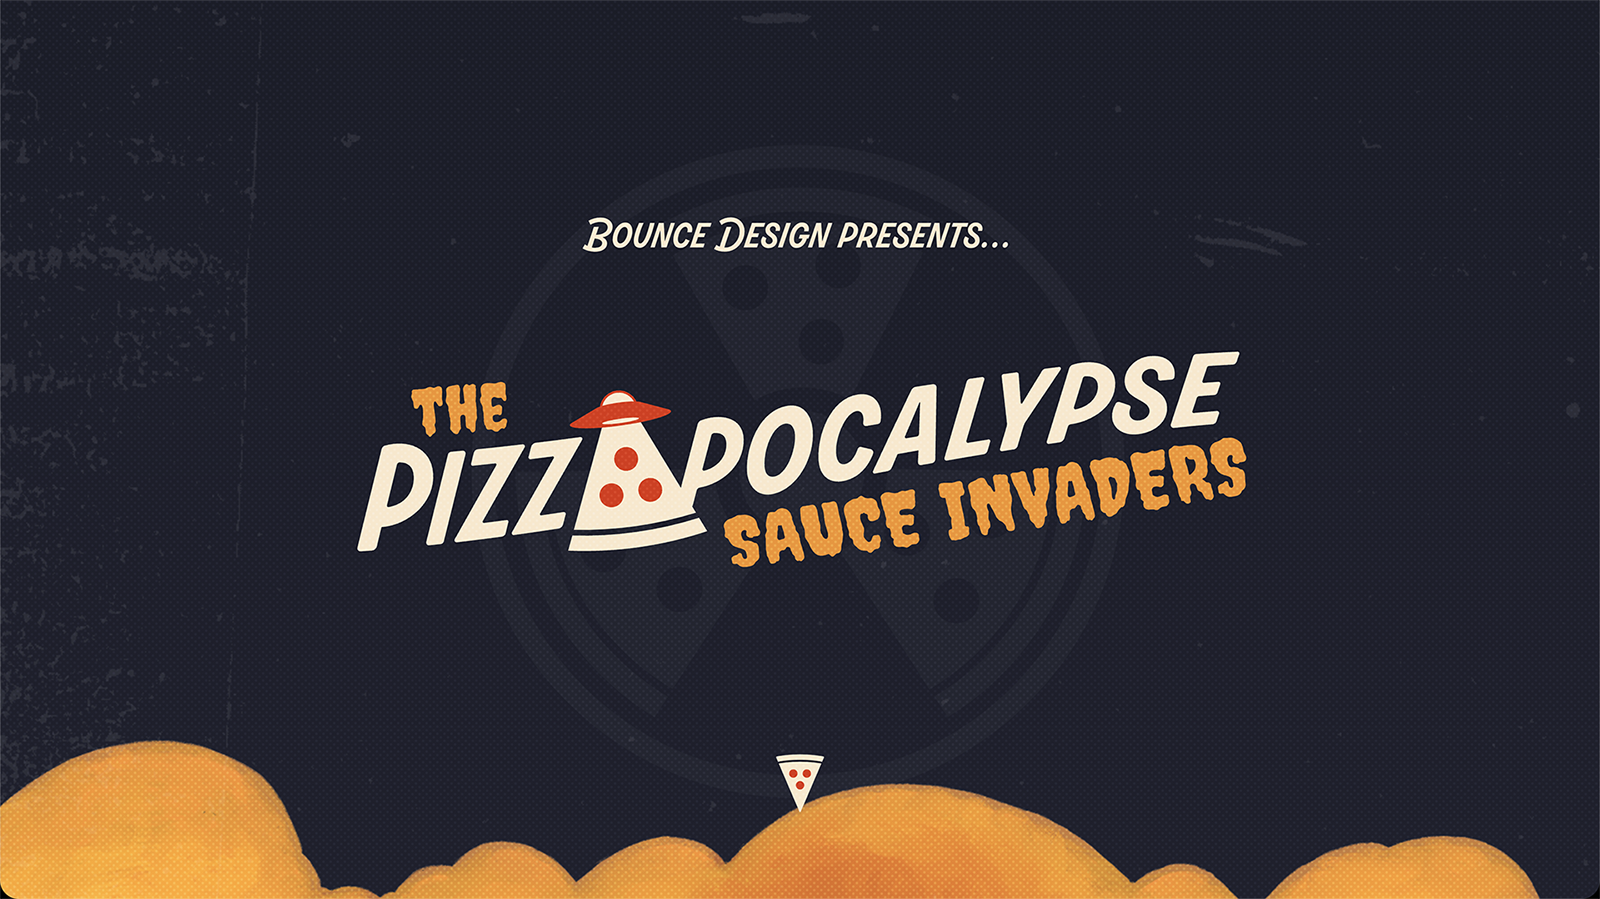 Pizzapocalypse website screenshot: Bounce Design presents... The Pizzapocalypse: Sauce Invaders